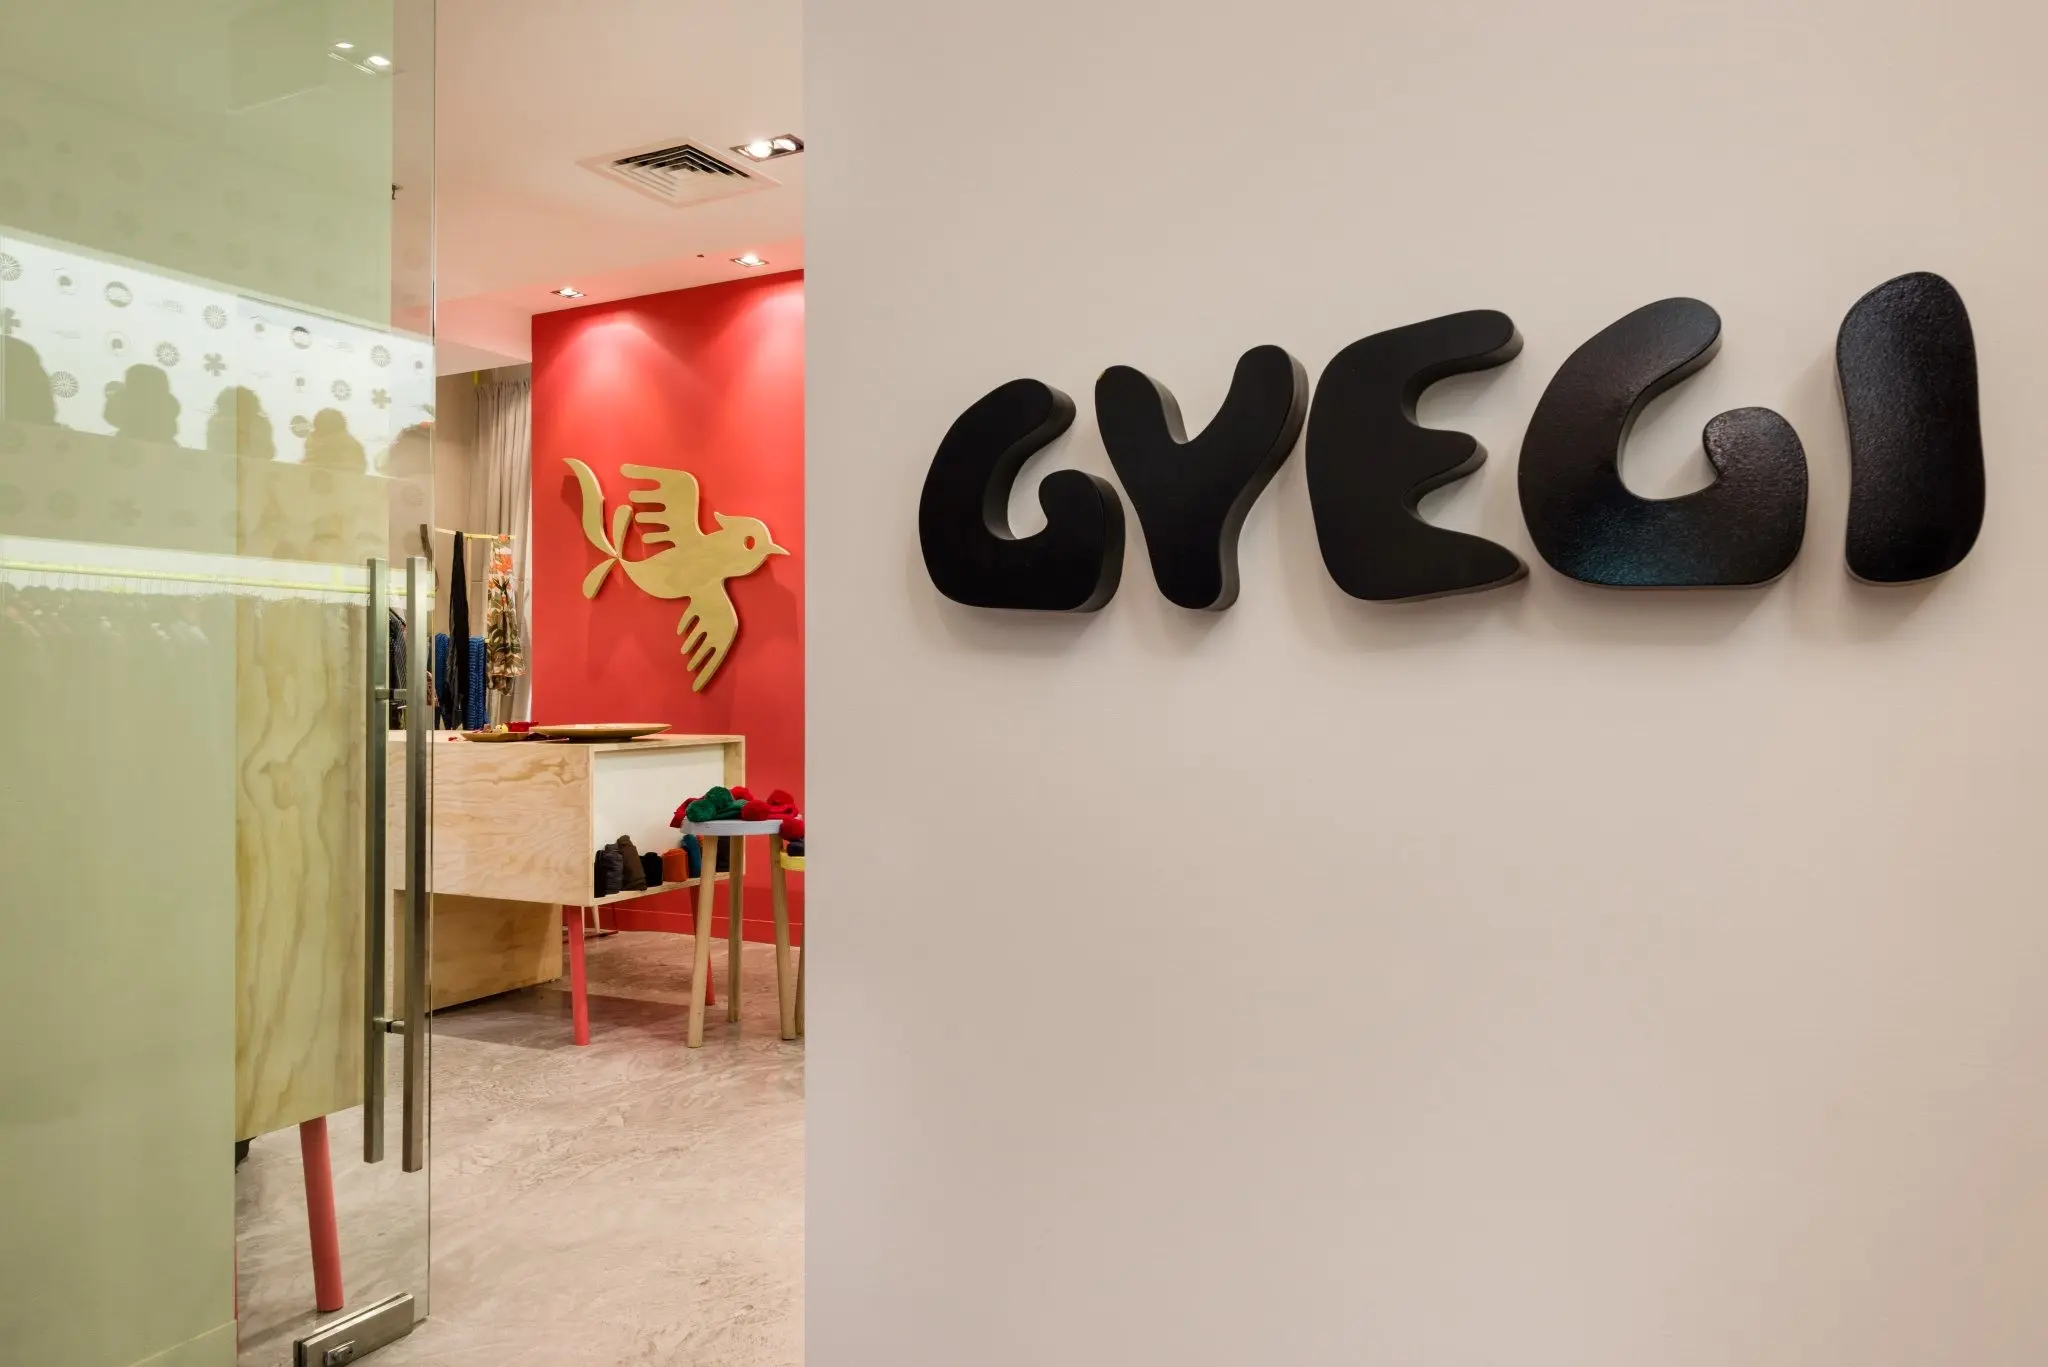 Gyegi - retail design, project management - GPO, Melbourne, Australia